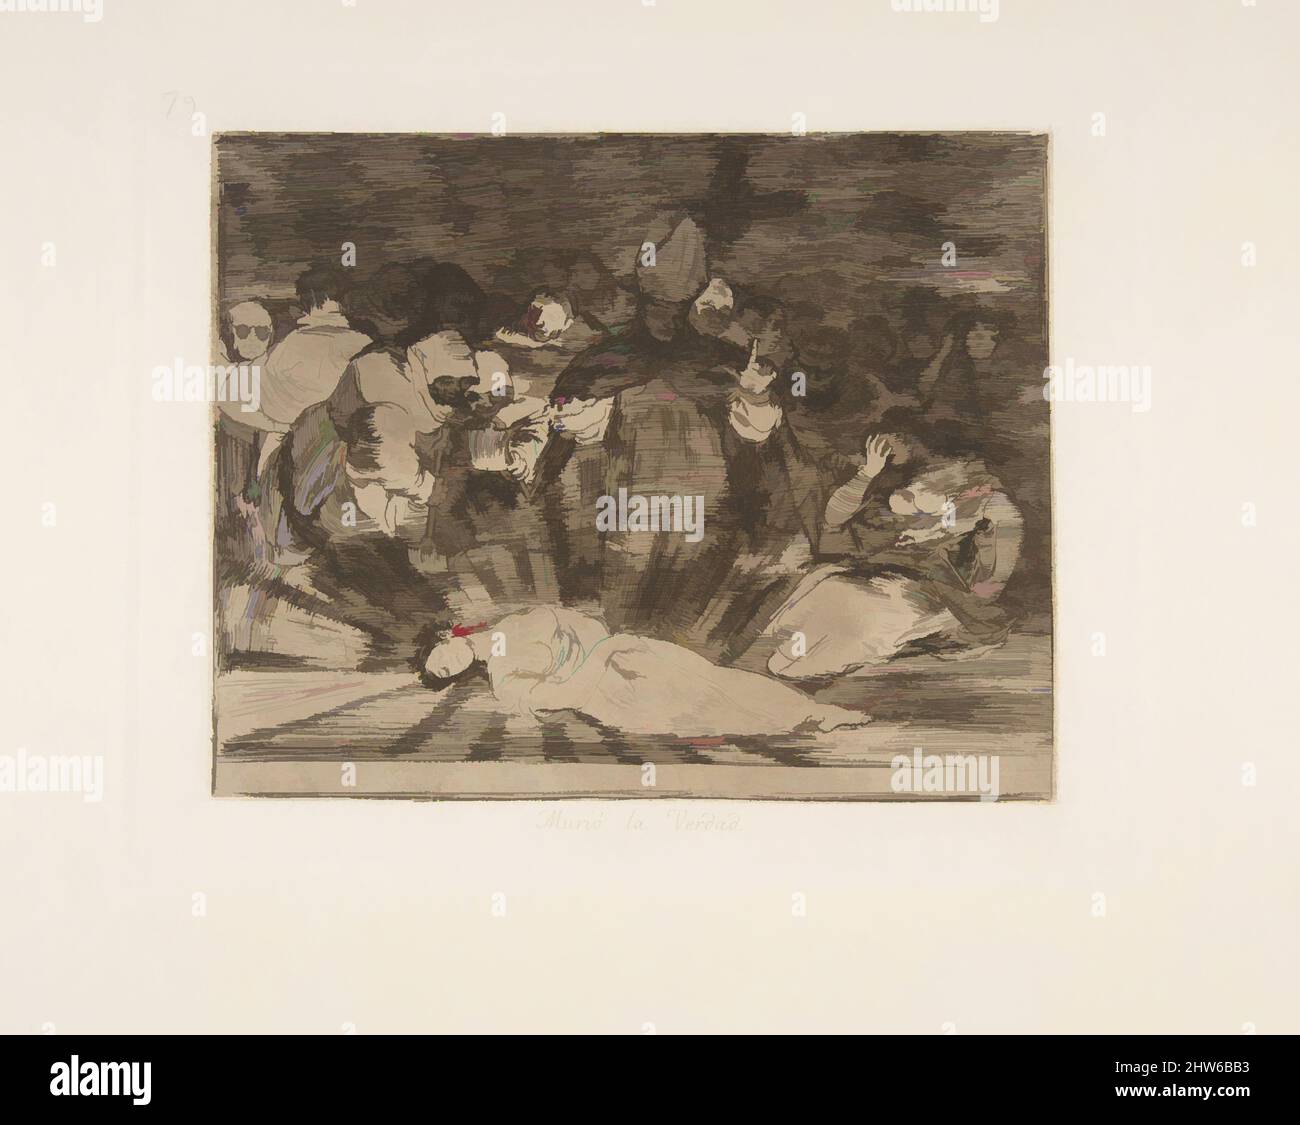 Art inspiré par la planche 79 de 'les désastres de la guerre' (Los Desastres de la Guerra): 'La vérité est morte' (Murió la verdad.), après 1814–15 (publié en 1863), Etching et burnisher, plaque: 6 13/16 × 8 9/16 in. (17,3 × 21,8 cm), Prints, Goya (Francisco de Goya y Lucientes) (espagnol, oeuvres classiques modernisées par Artotop avec une touche de modernité. Formes, couleur et valeur, impact visuel accrocheur sur l'art émotions par la liberté d'œuvres d'art d'une manière contemporaine. Un message intemporel qui cherche une nouvelle direction créative. Artistes qui se tournent vers le support numérique et créent le NFT Artotop Banque D'Images